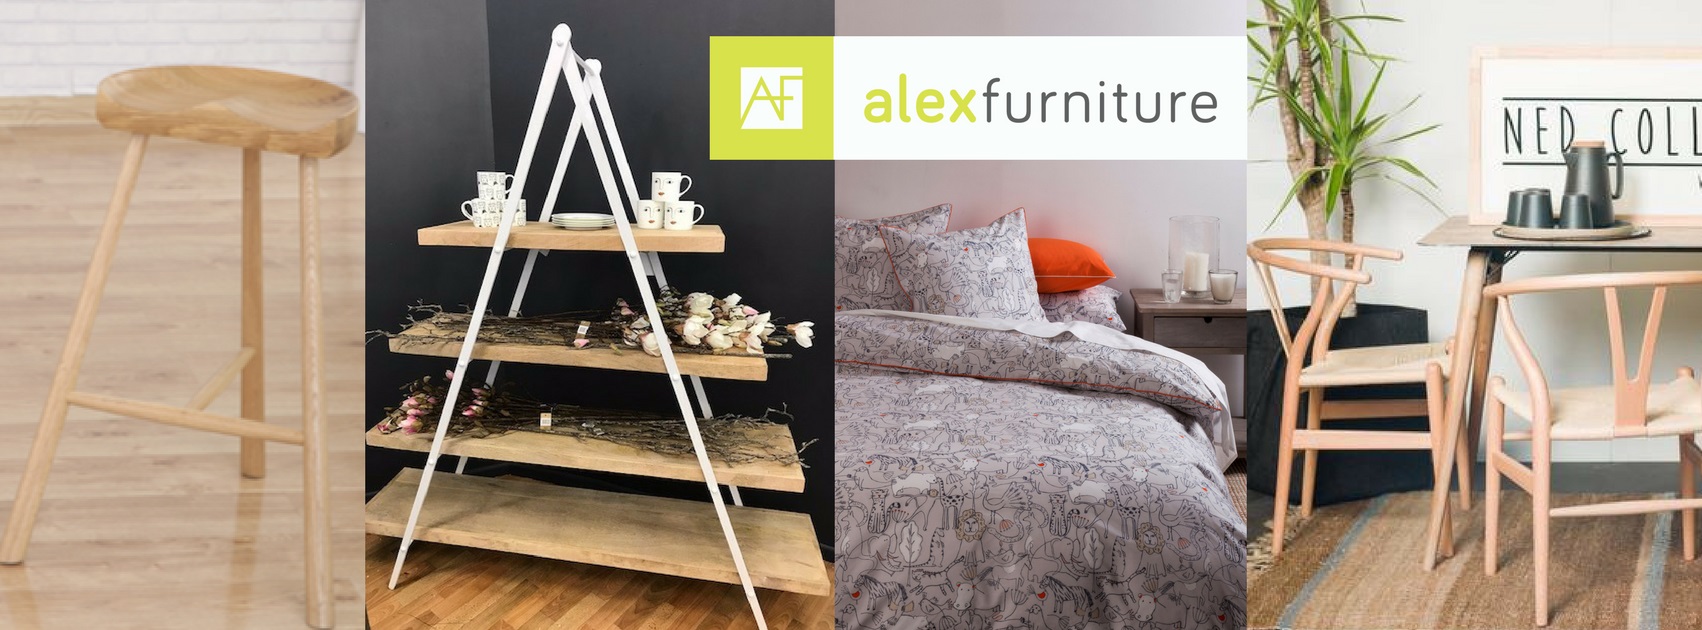 
Alex Furniture